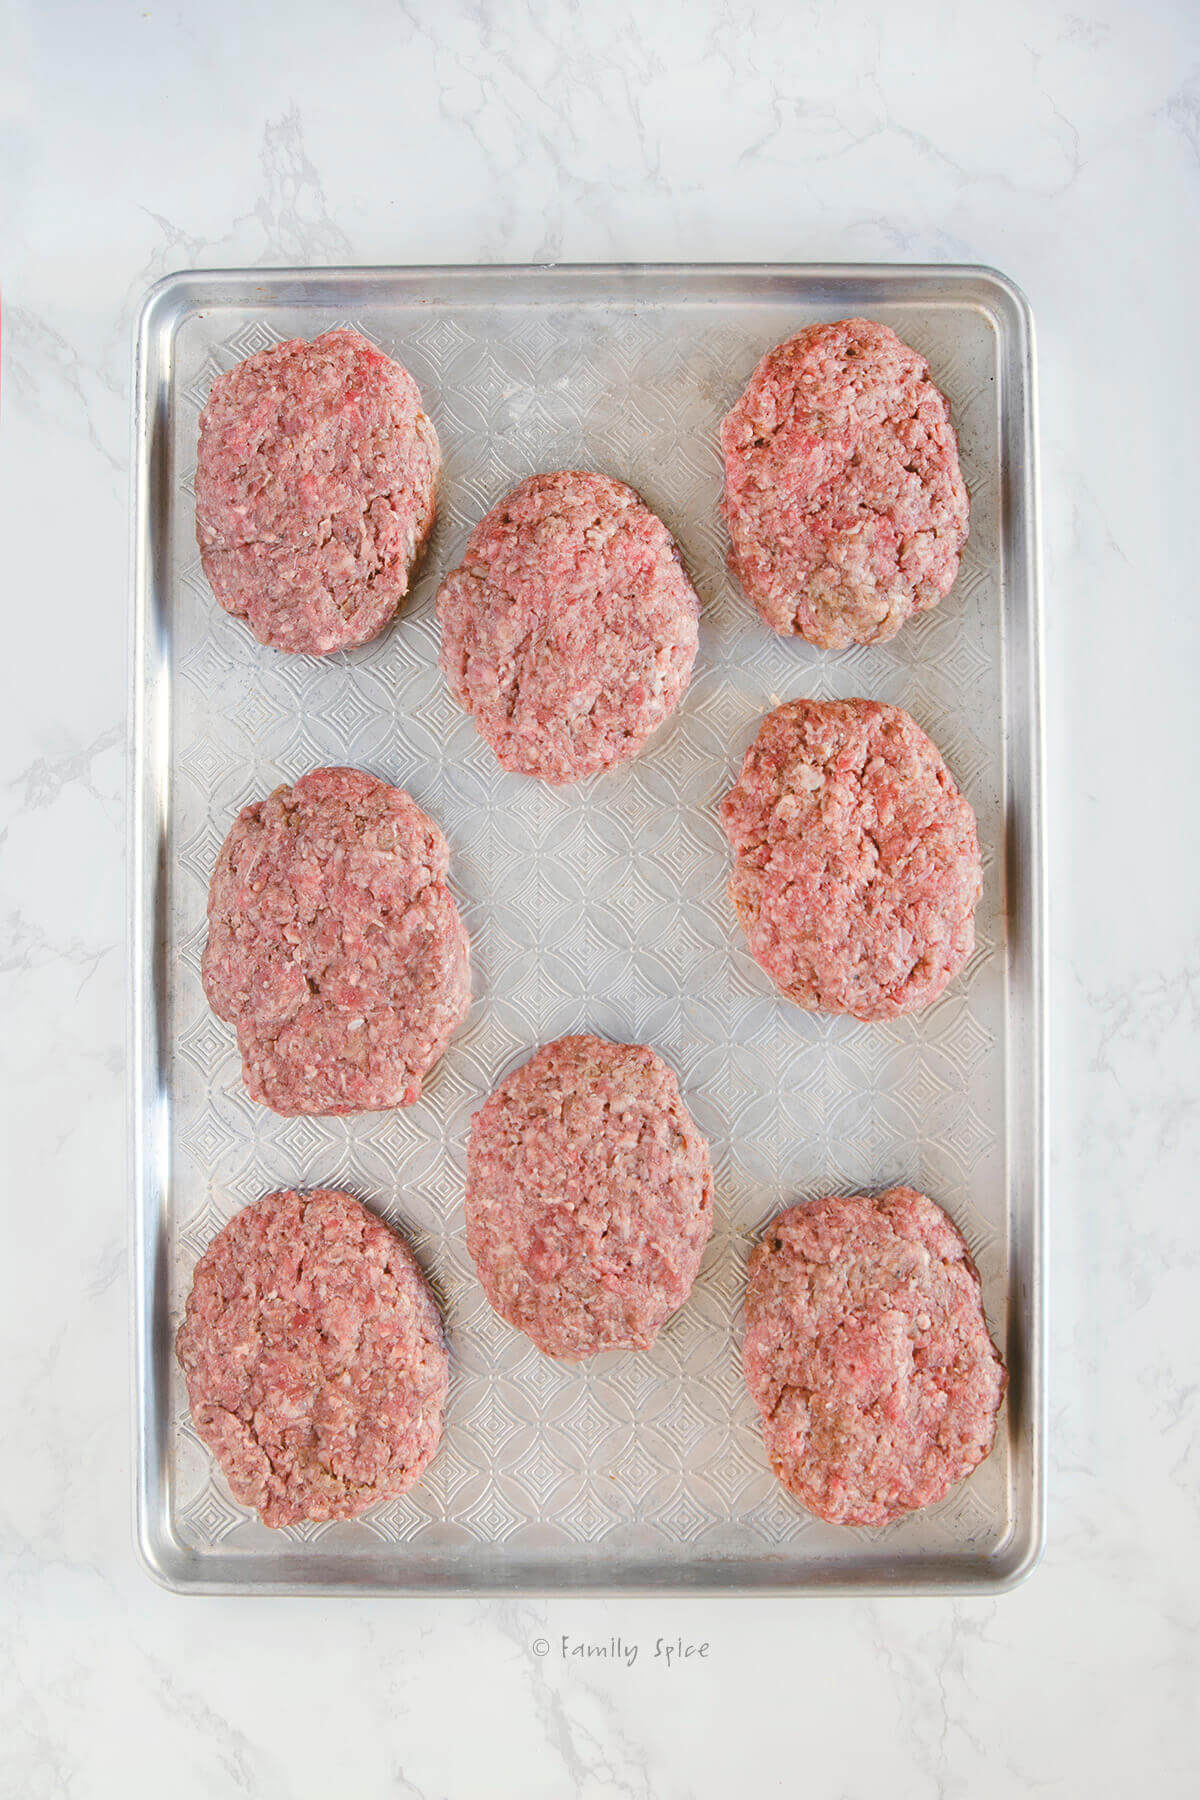 Meat patties formed on a baking sheet to make salisbury steak